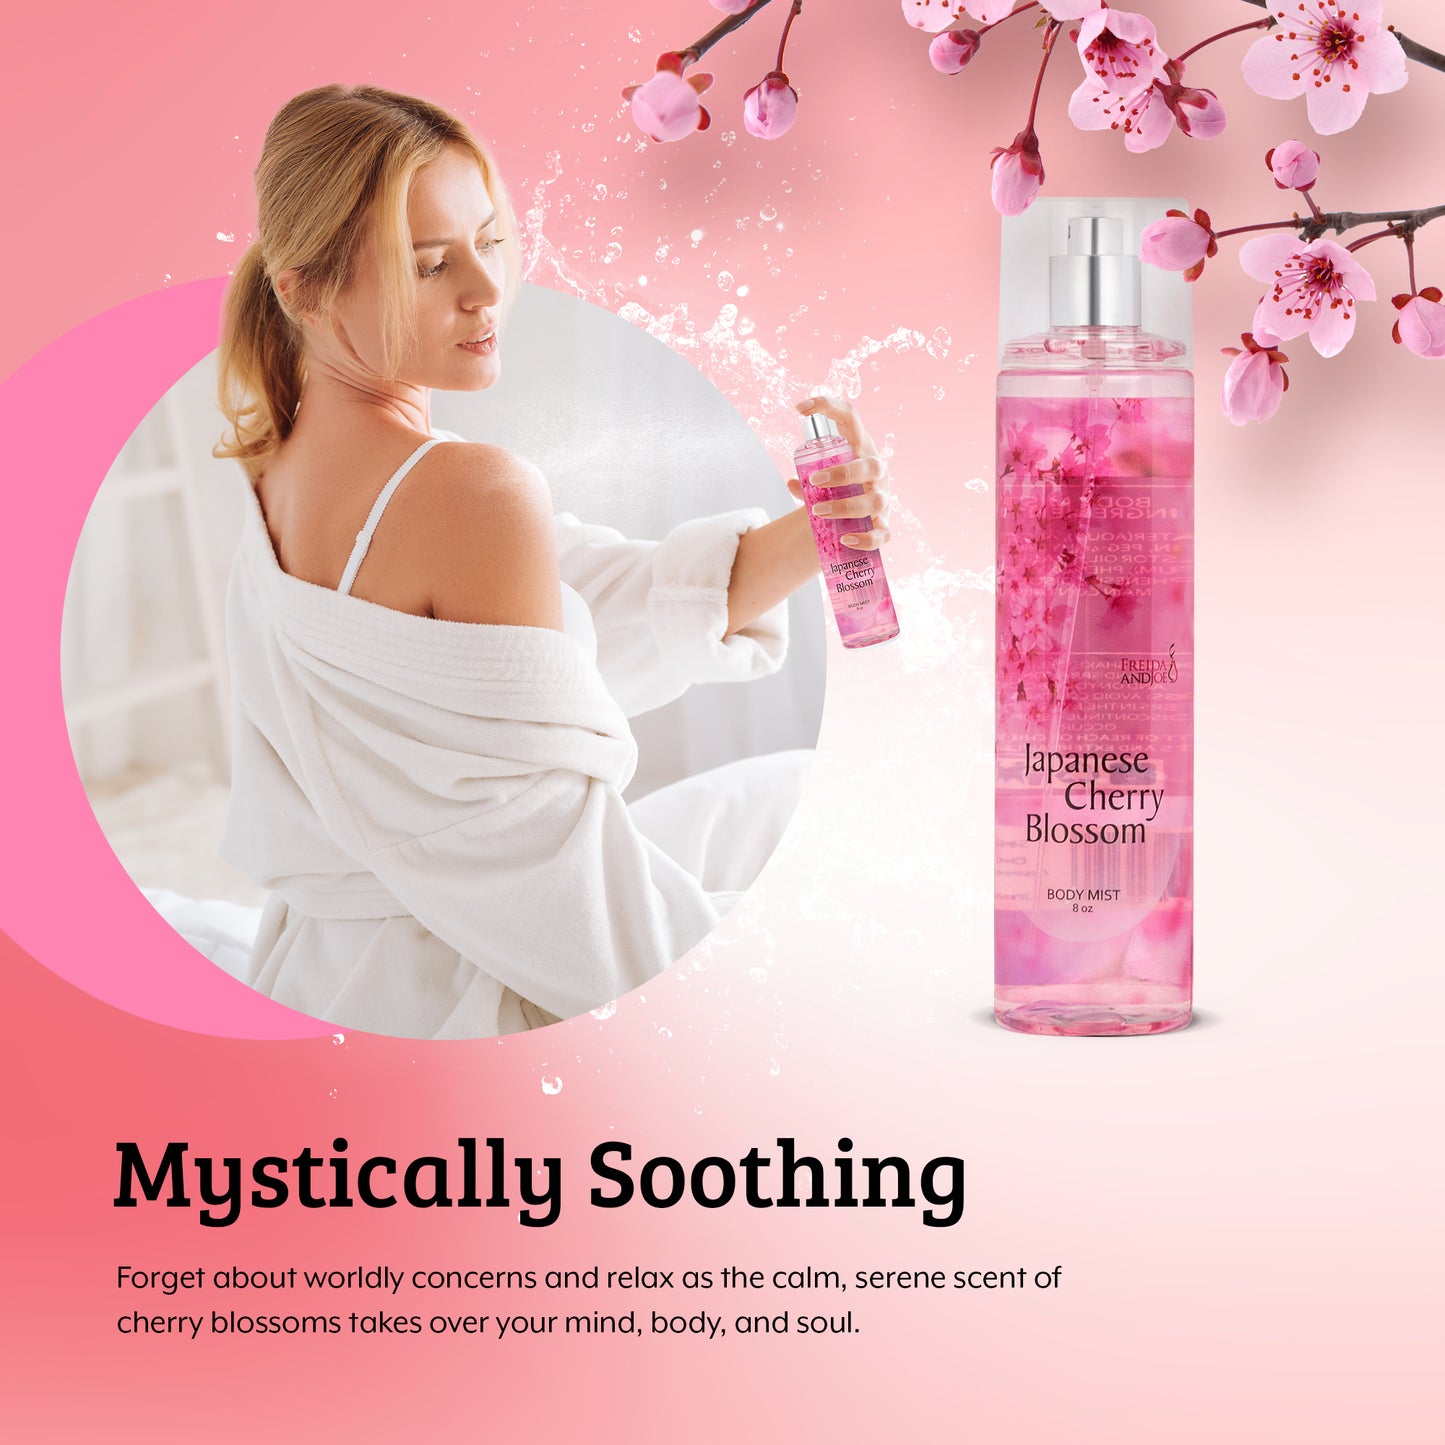 Japanese Cherry Blossom Fragrance Body Mist in 8oz Spray Bottle